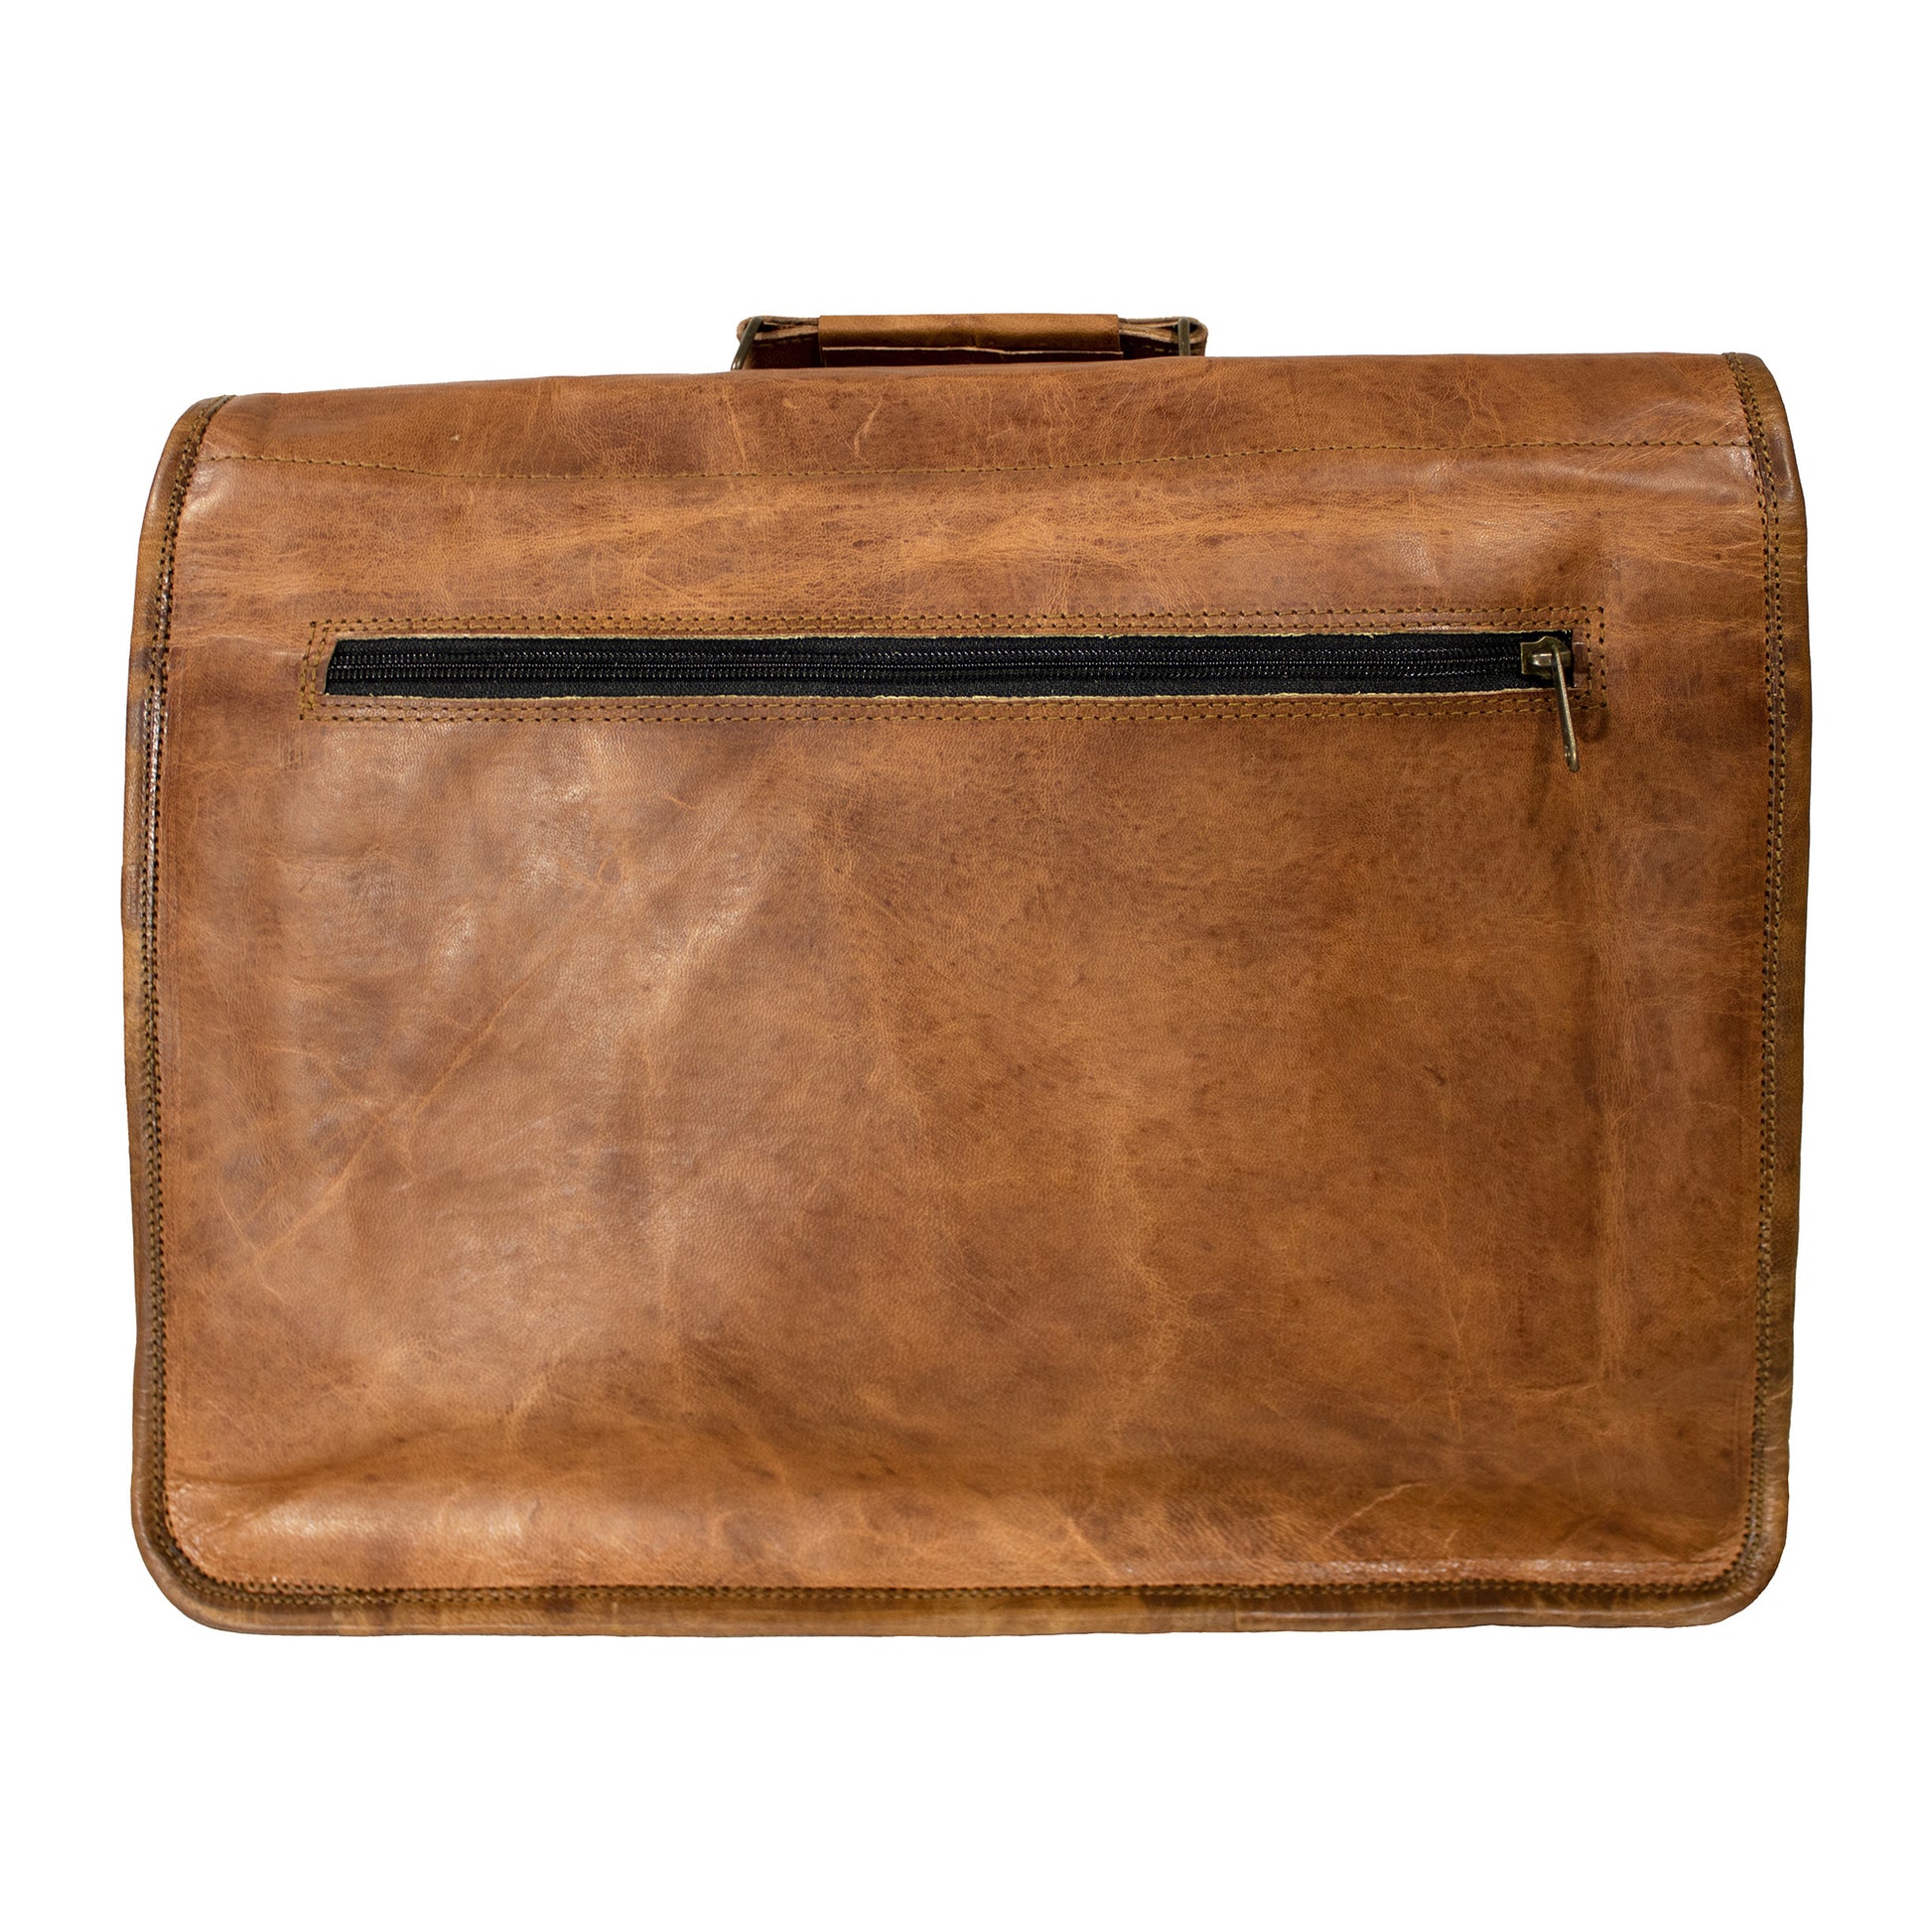 Men's Leather Laptop Bag 17 Inch Laptops - Vintage Messenger